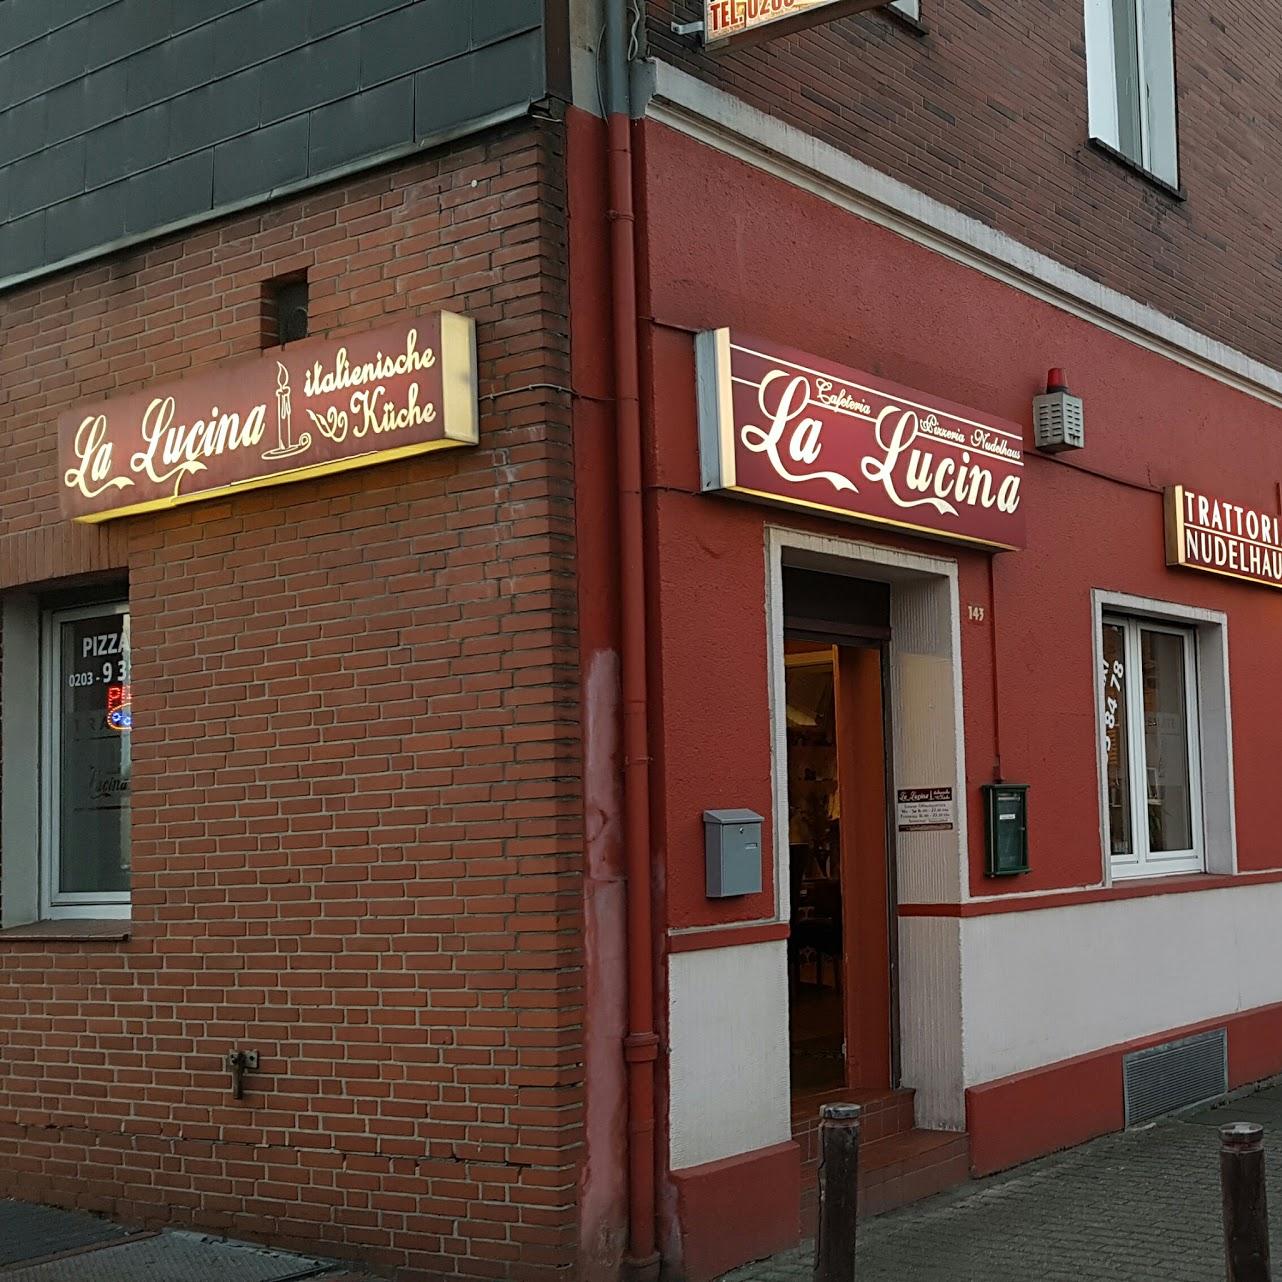 Restaurant "Pizzeria Trattoria La Lucina" in Duisburg